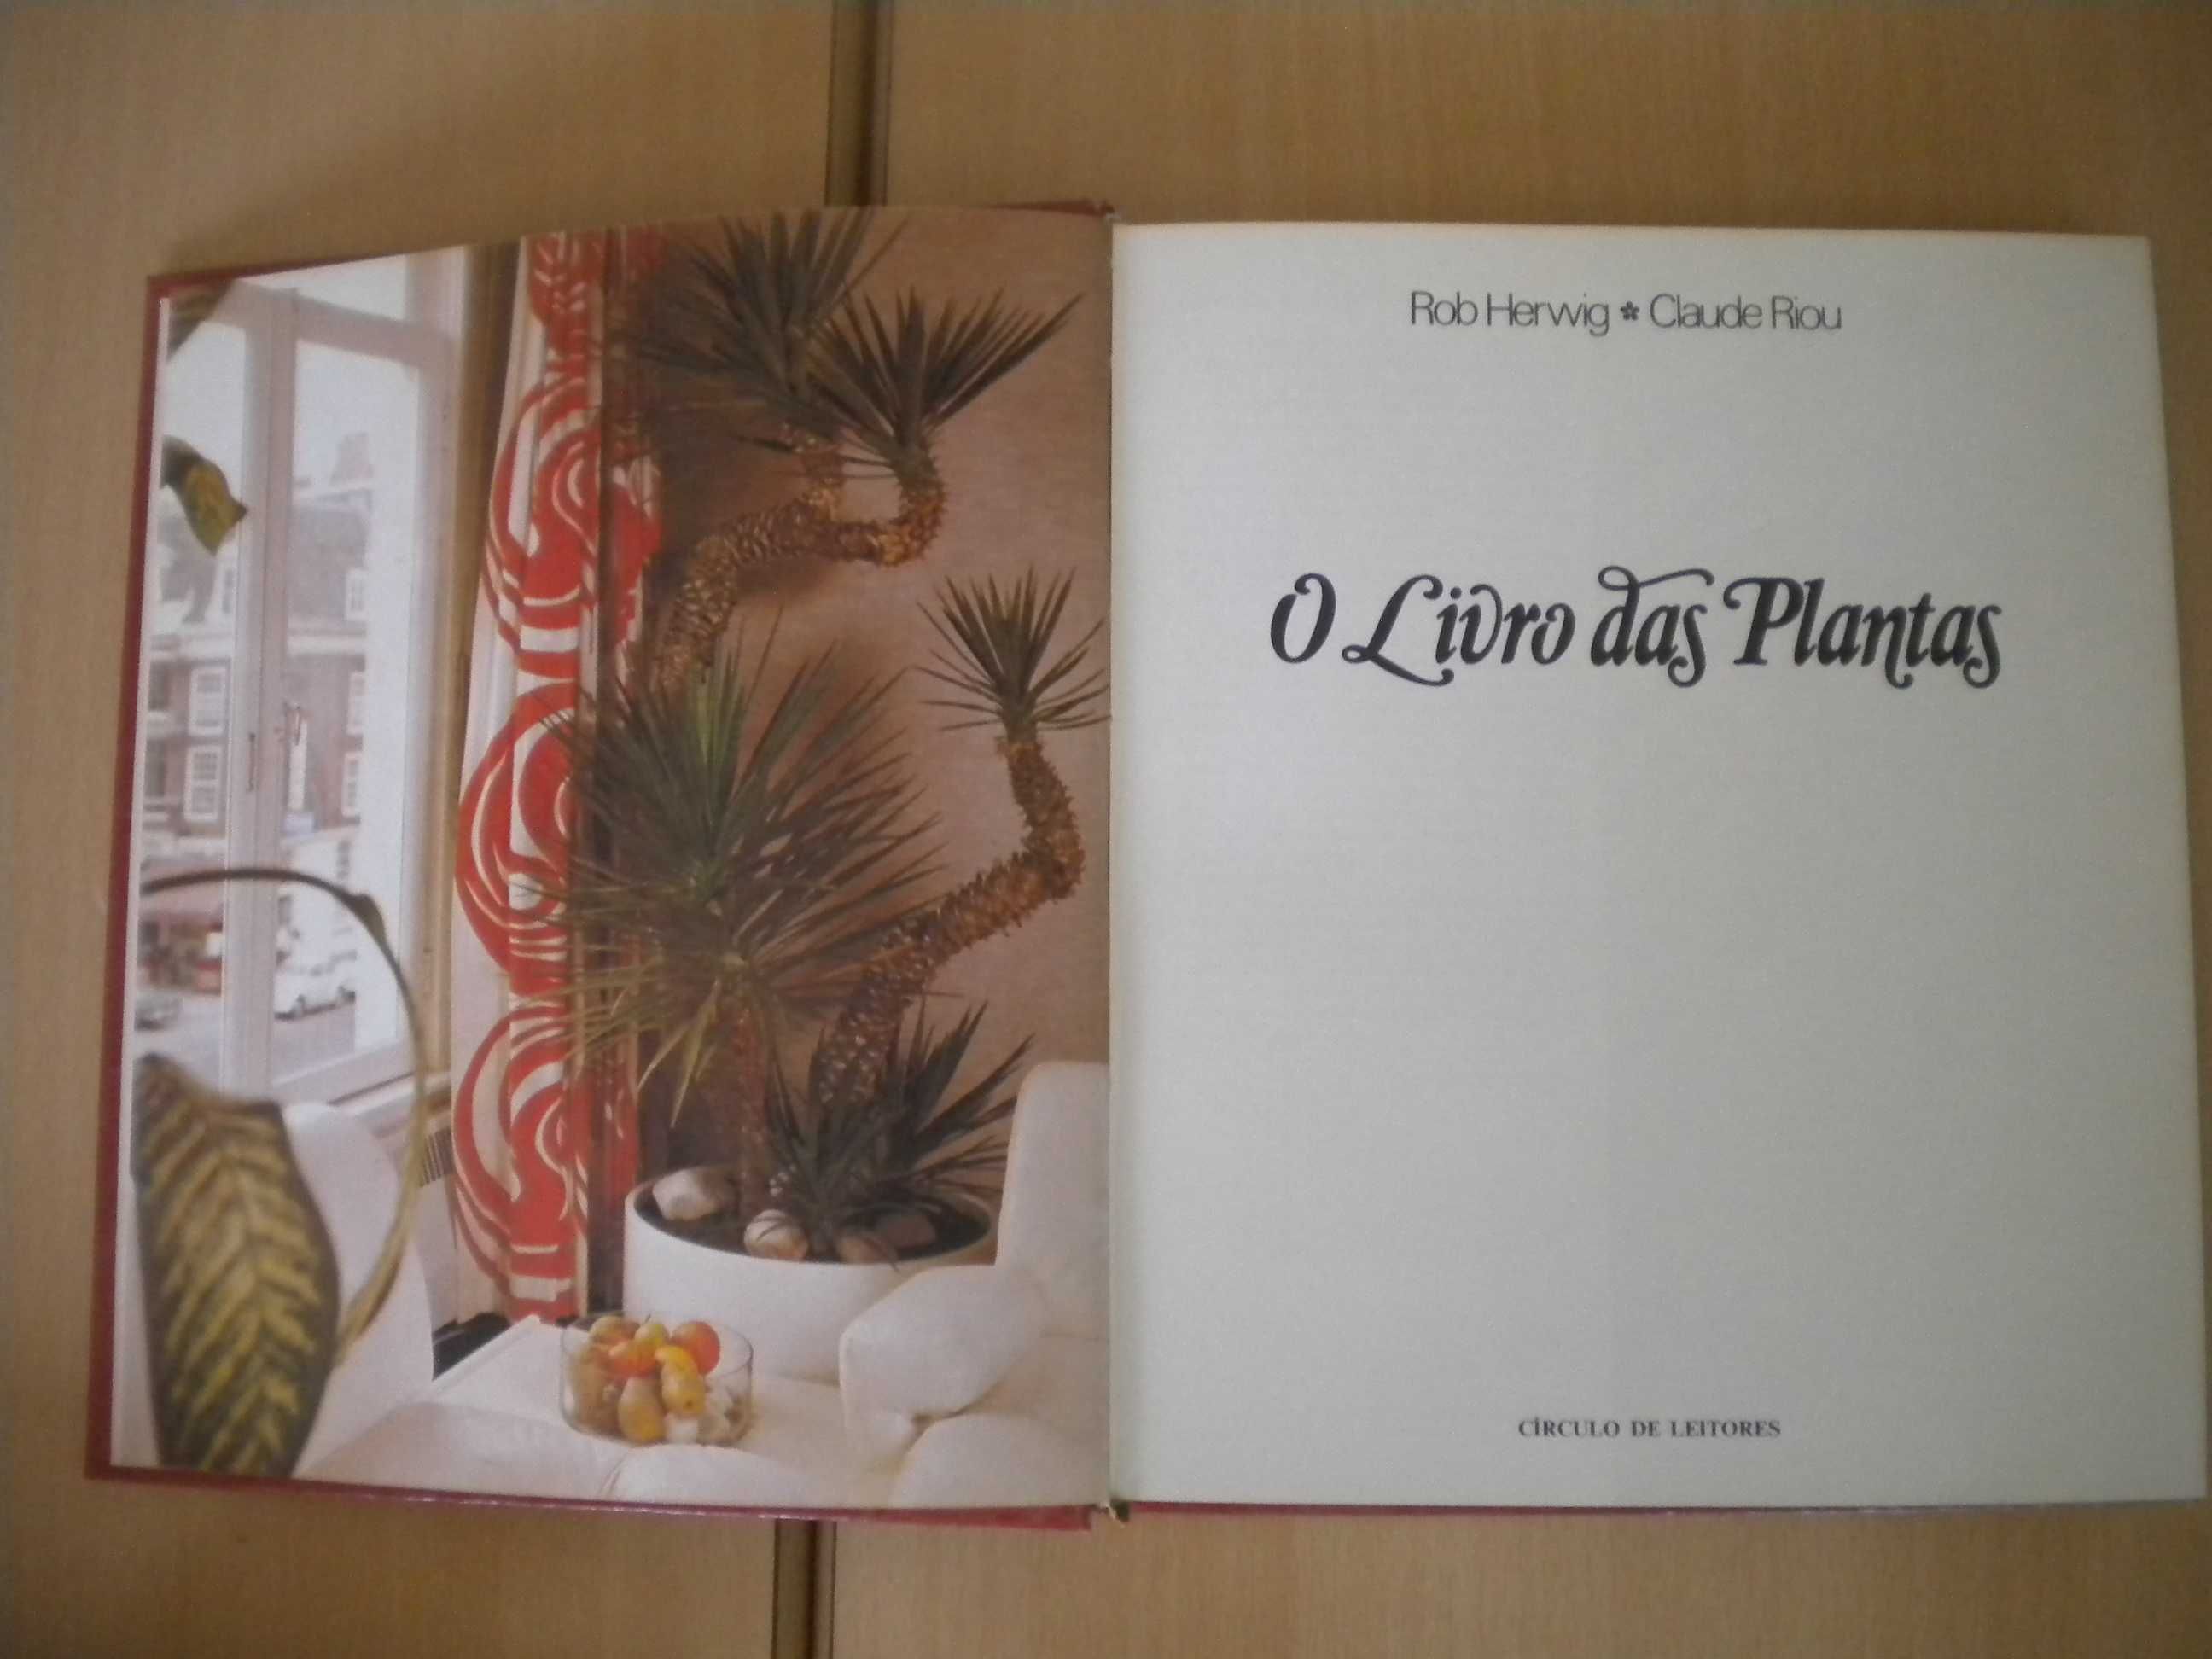 O Livro das Plantas
de Rob Herwig e Claude Riou